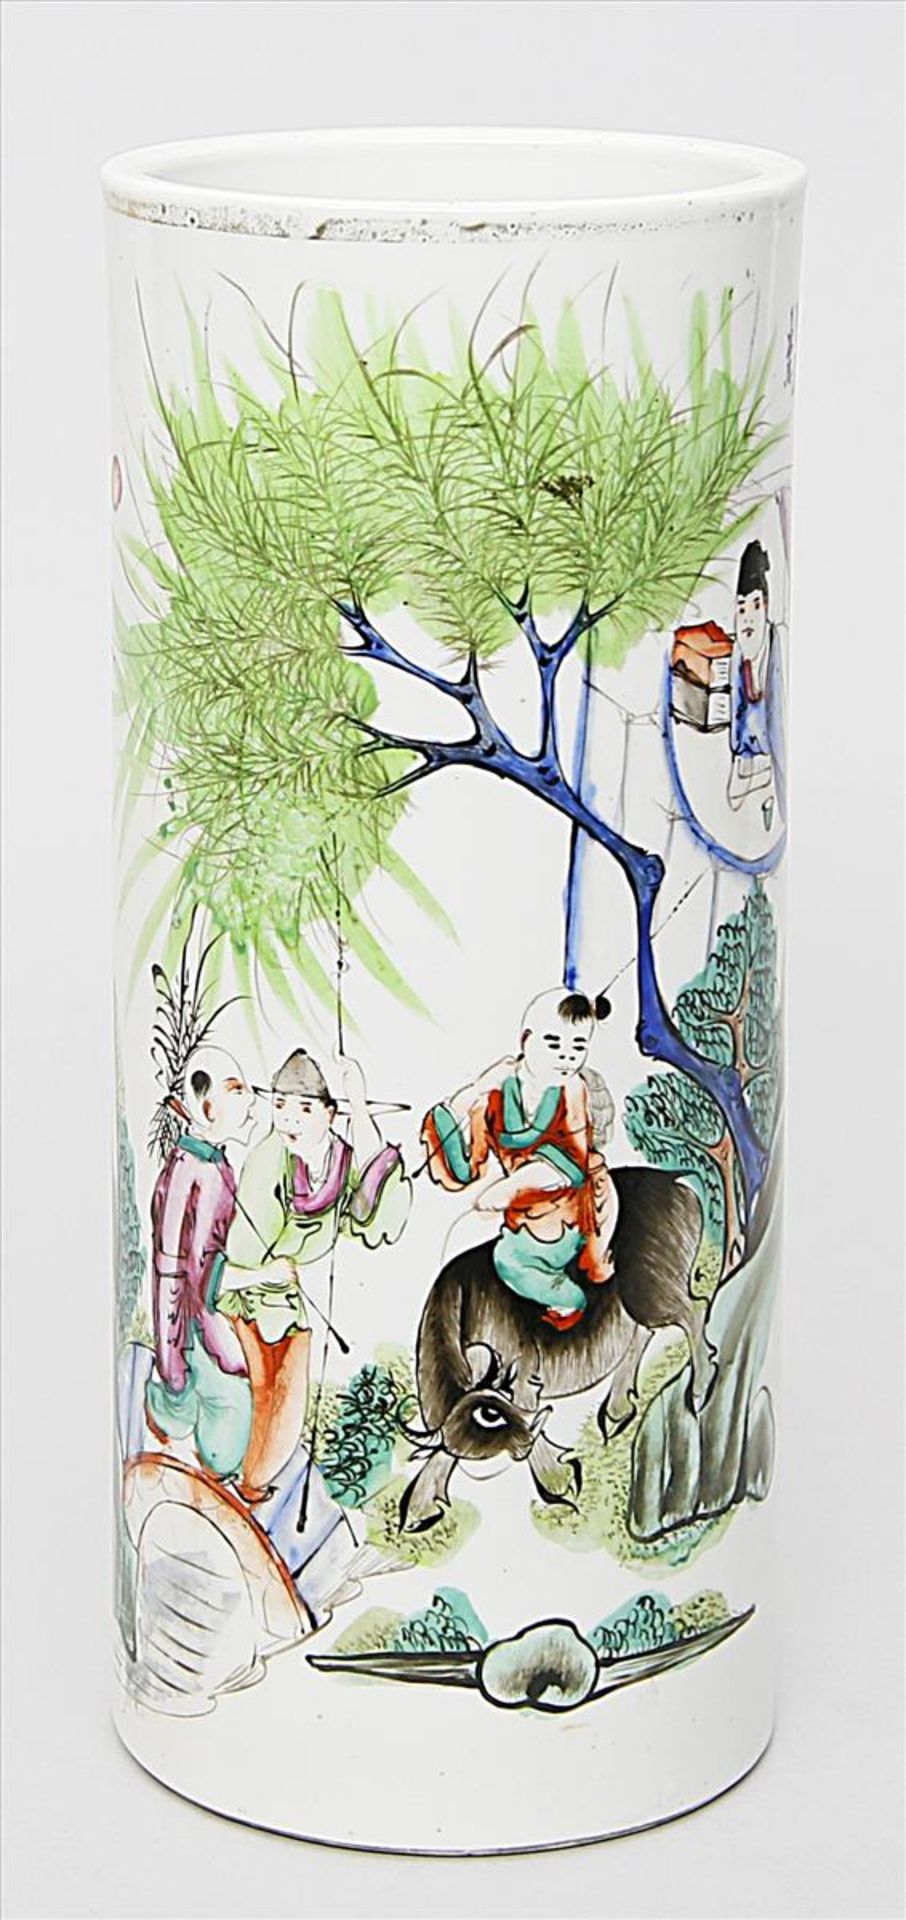 Zylindrische Vase.Porzellan. Schauseitig bunte, figürliche Bemalung, re. chinesische Kalligraphie.